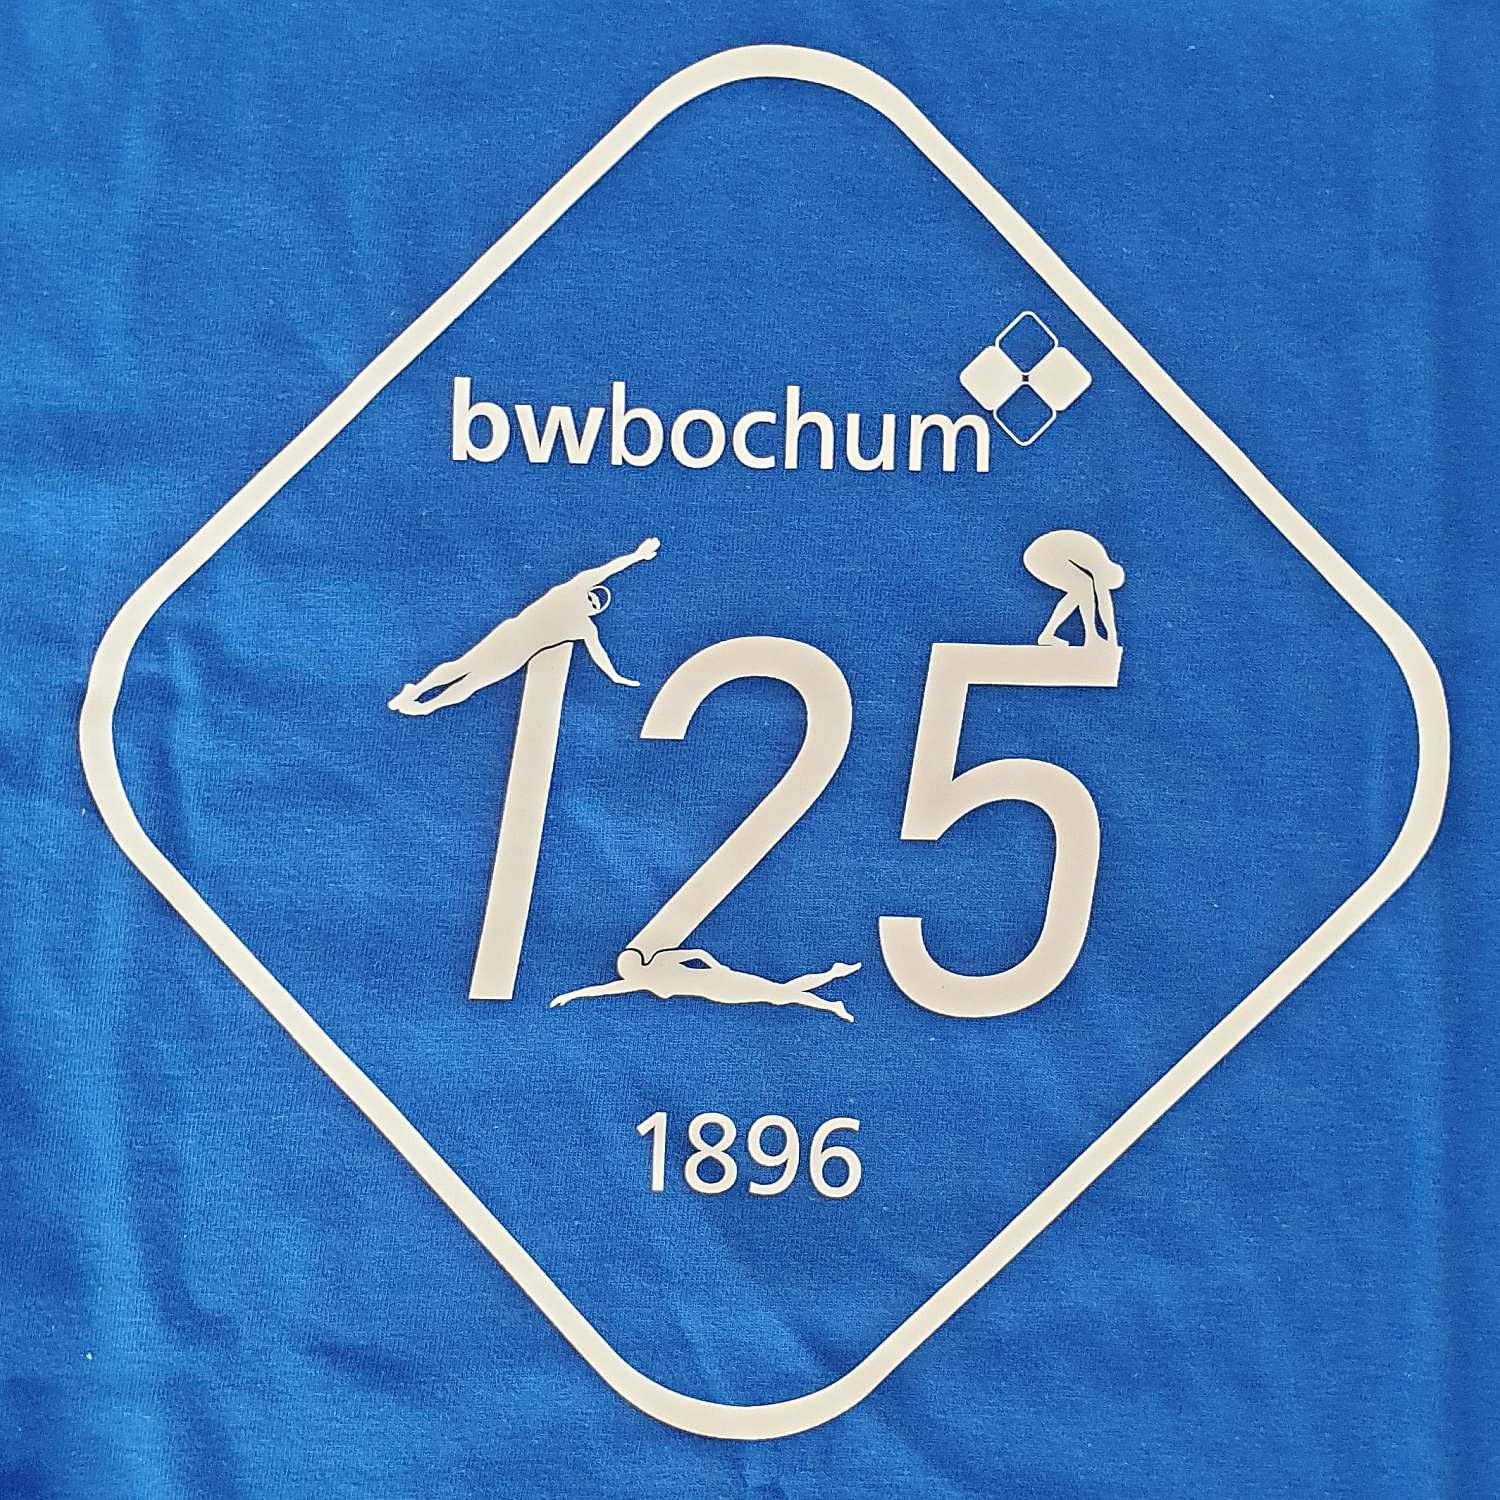 _bwbochum/medien/Schwimmen/Schwimmen_Fotos-2021/Jubilaeumsshirt-125-Jahre-BWB_quadratisch.jpg